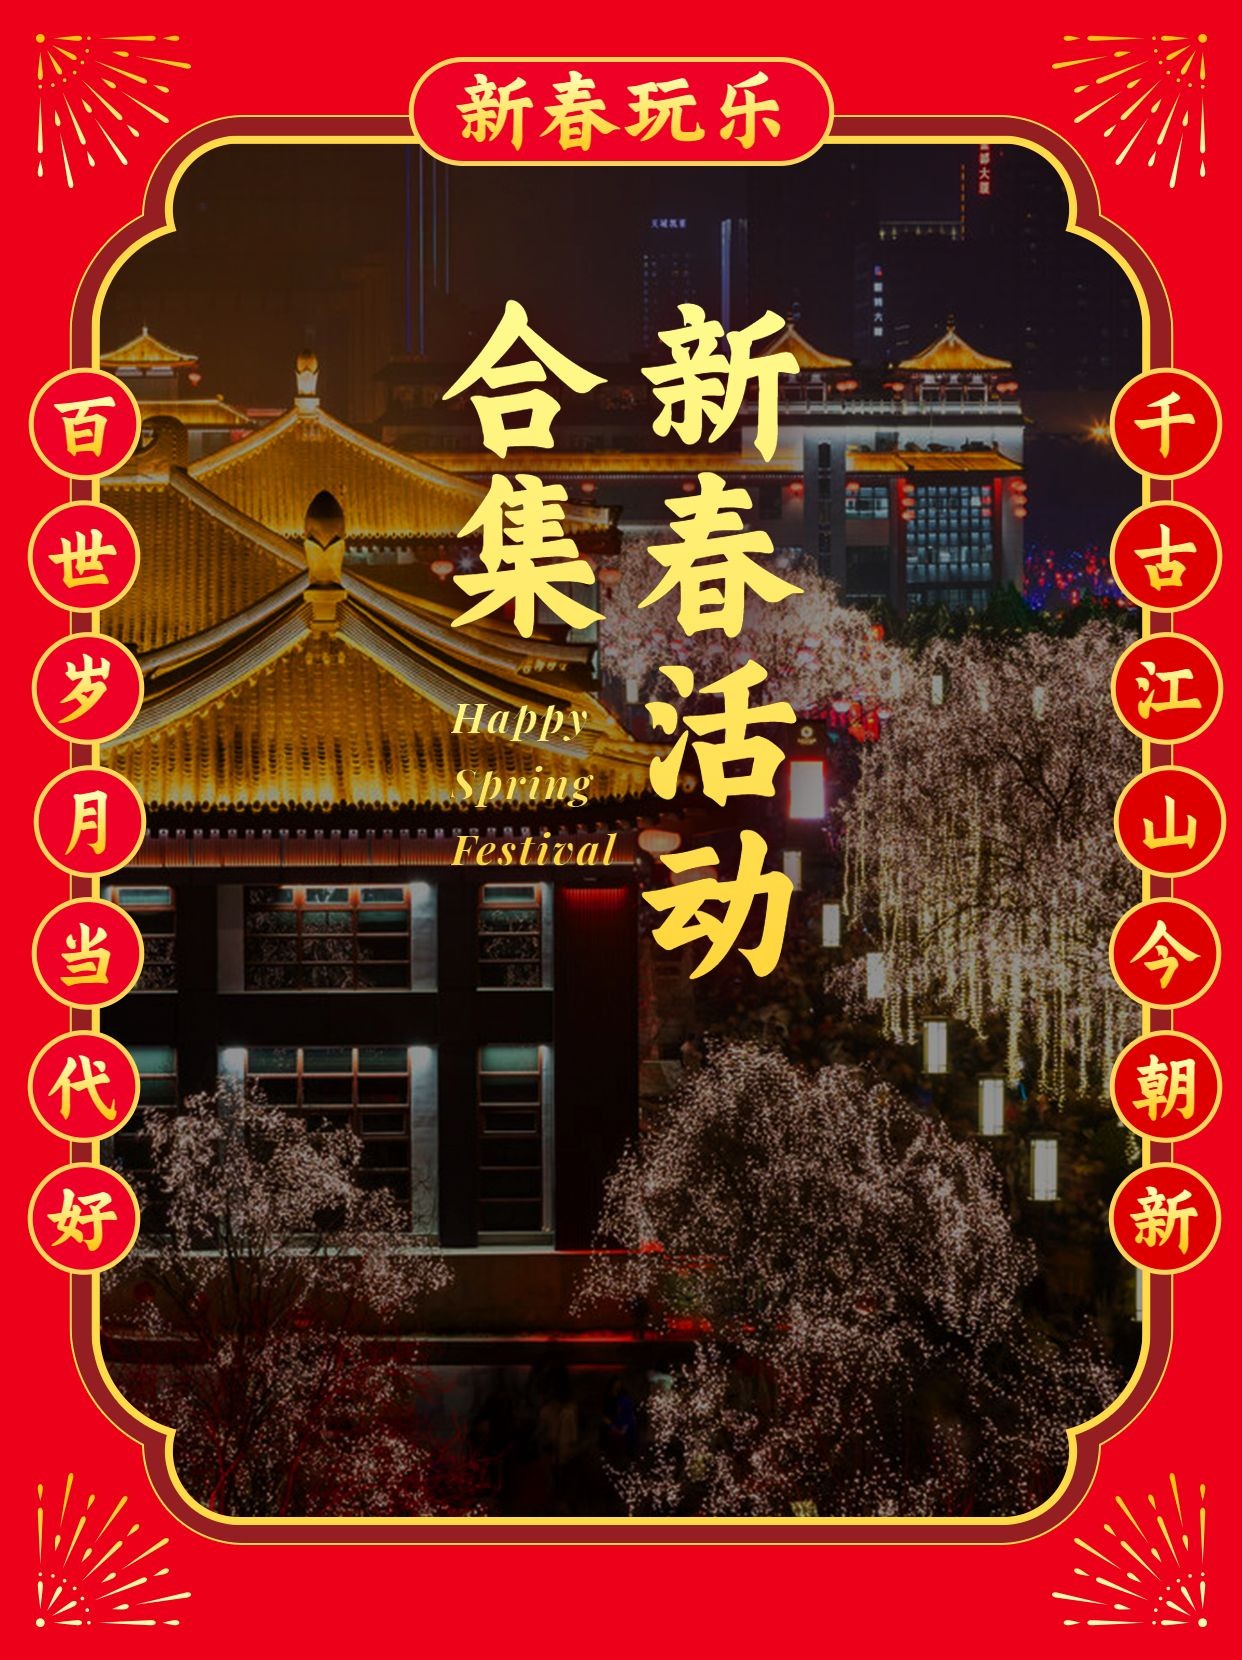 春节景区景点宣传推广小红书配图预览效果